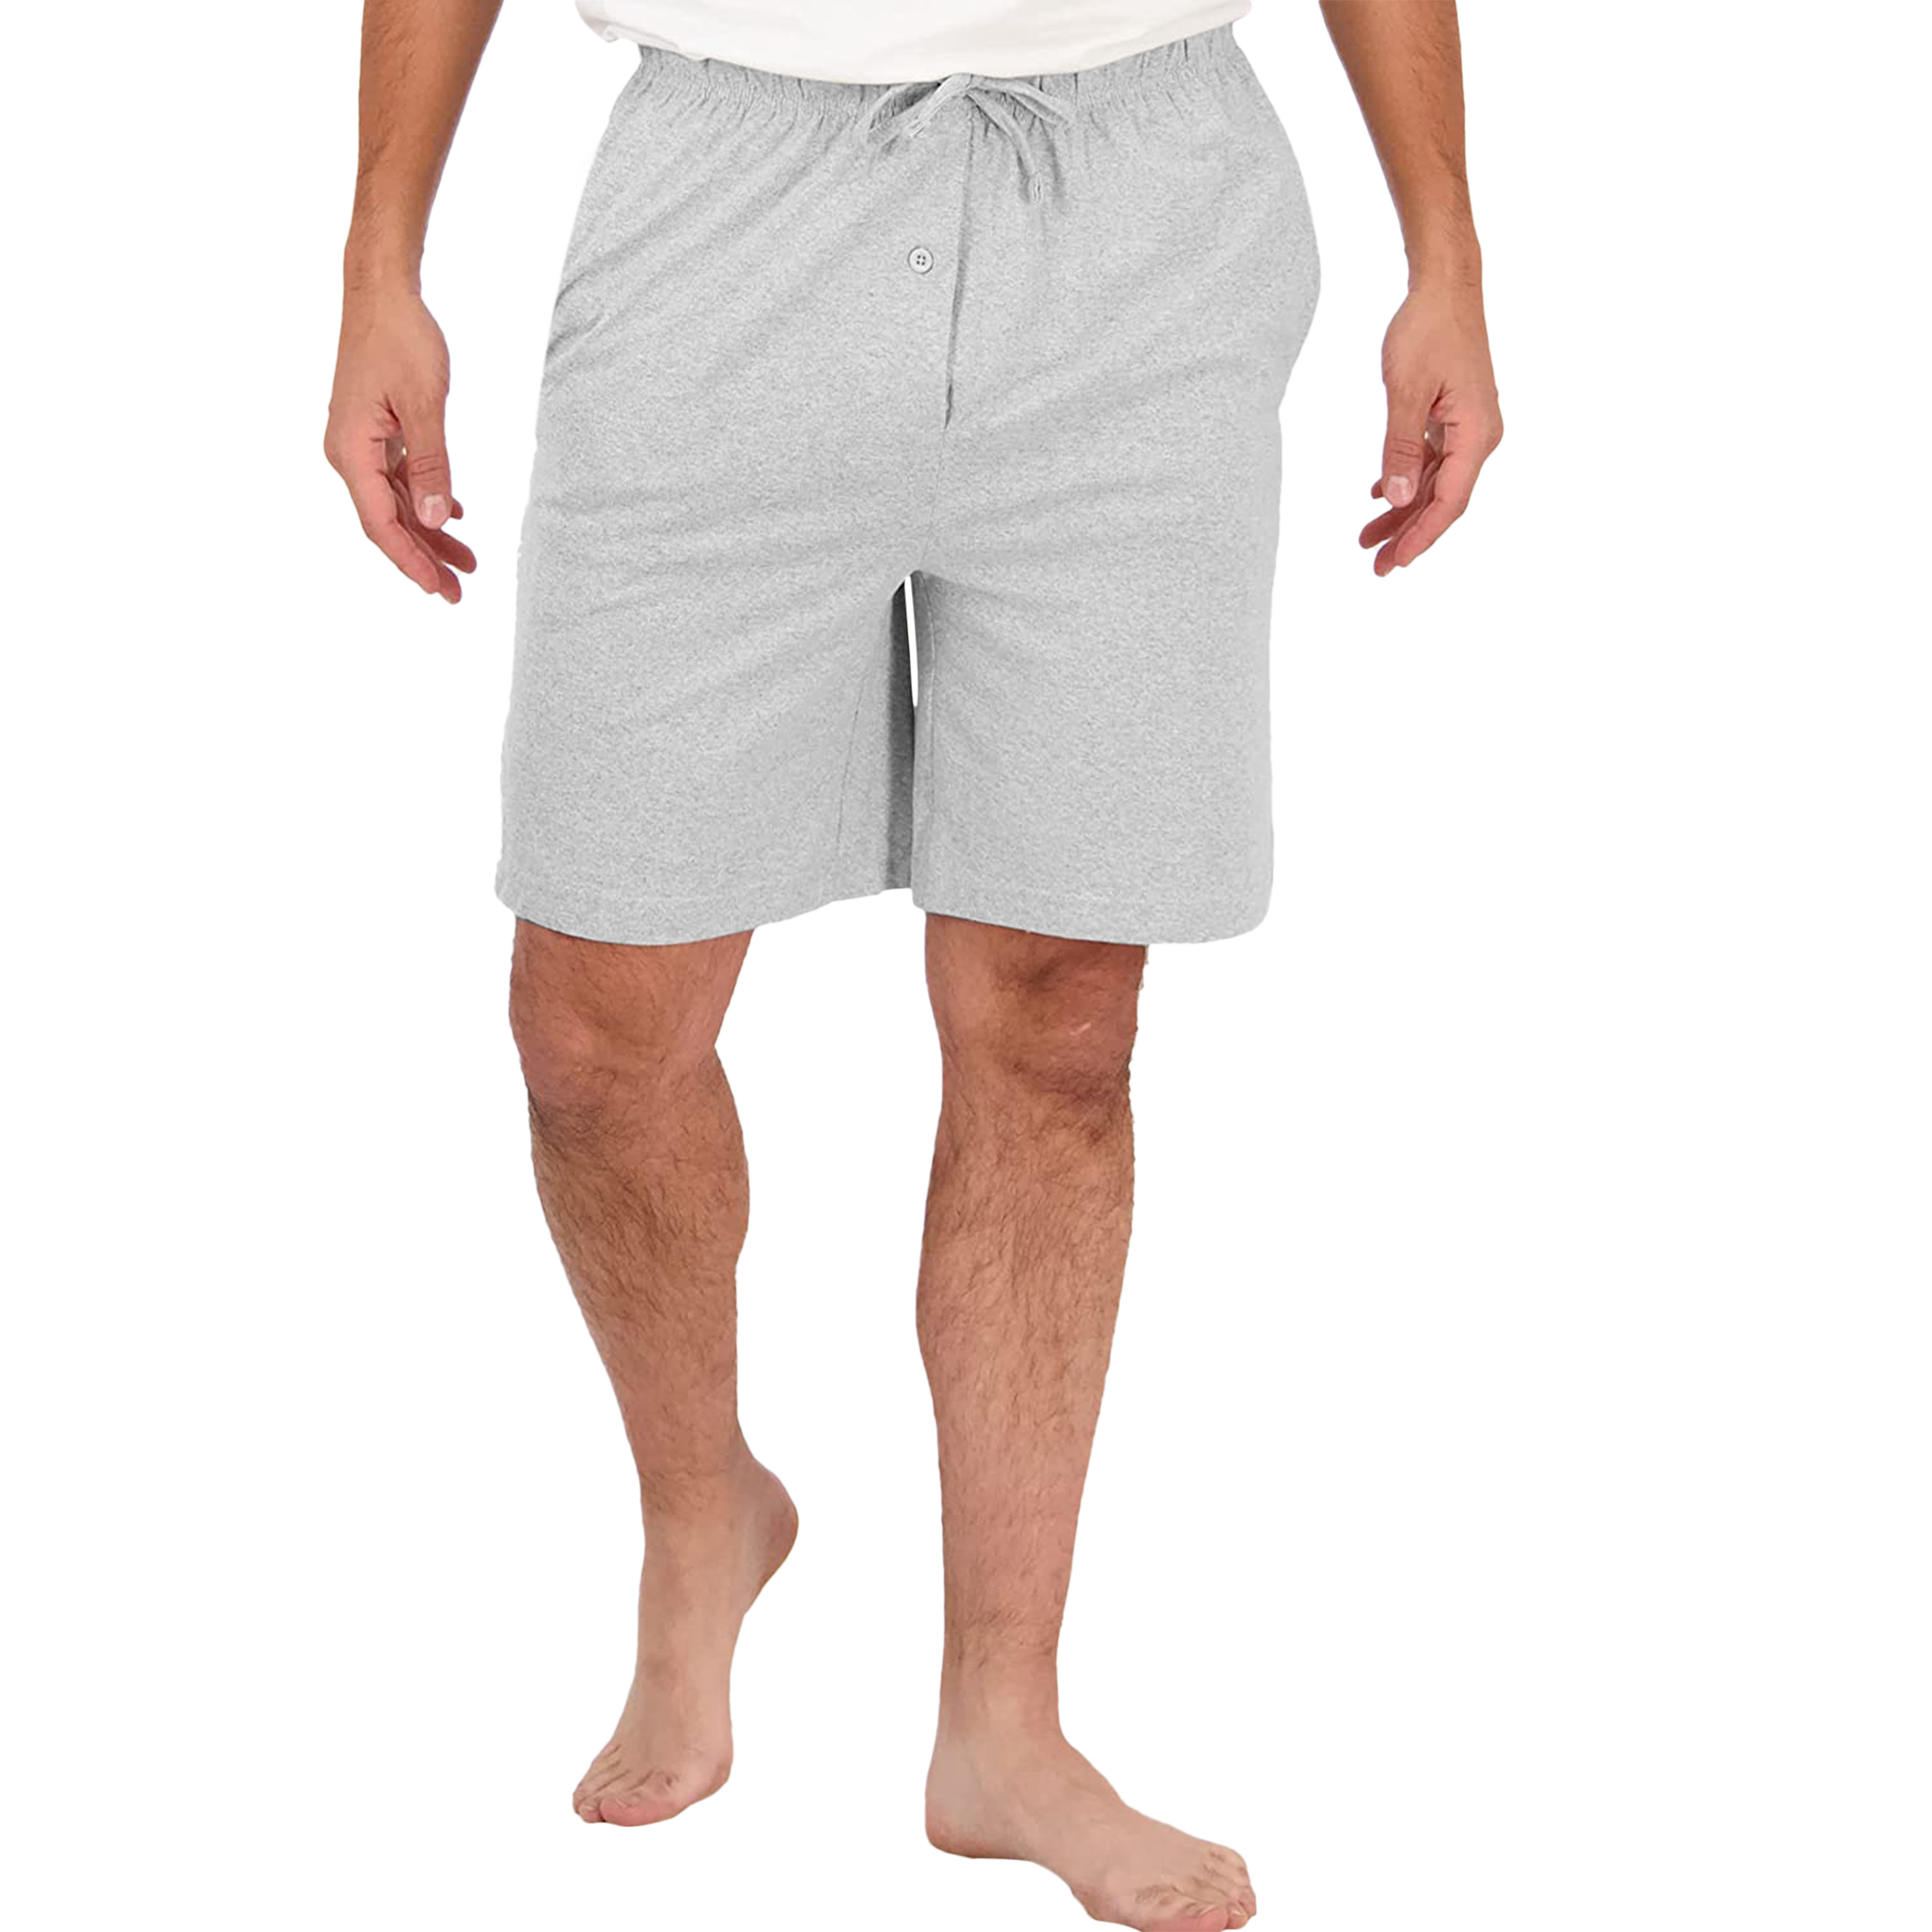 Men's Soft Solid Elastic Waistband Sleep Lounge Pajama Shorts - M